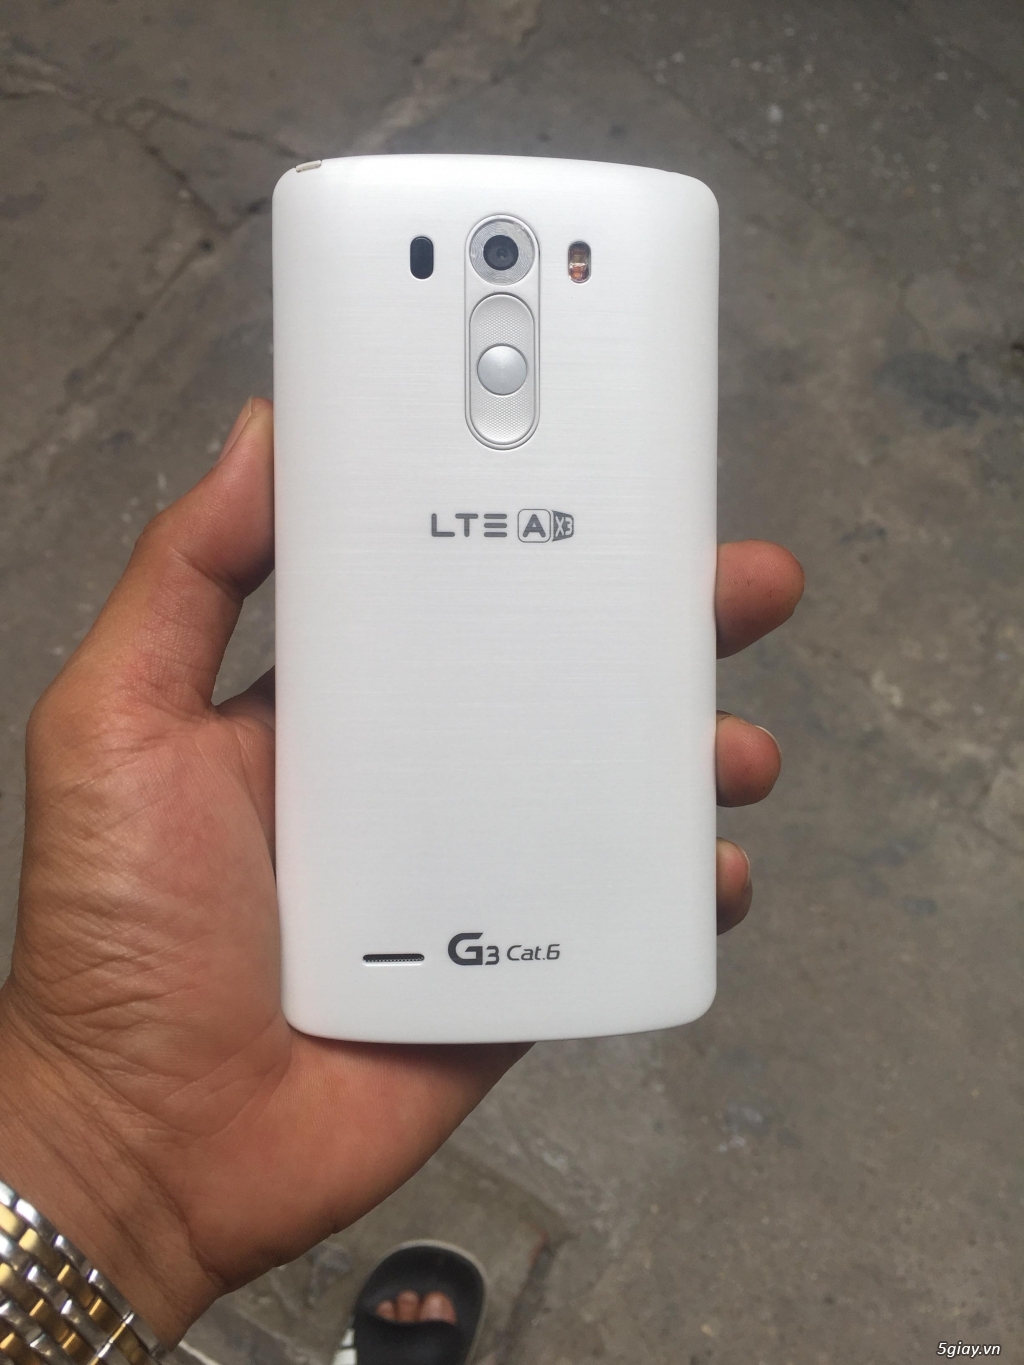 LG G3 Cat6 like new, COD toàn quốc giá tụt quần 1500K - 2